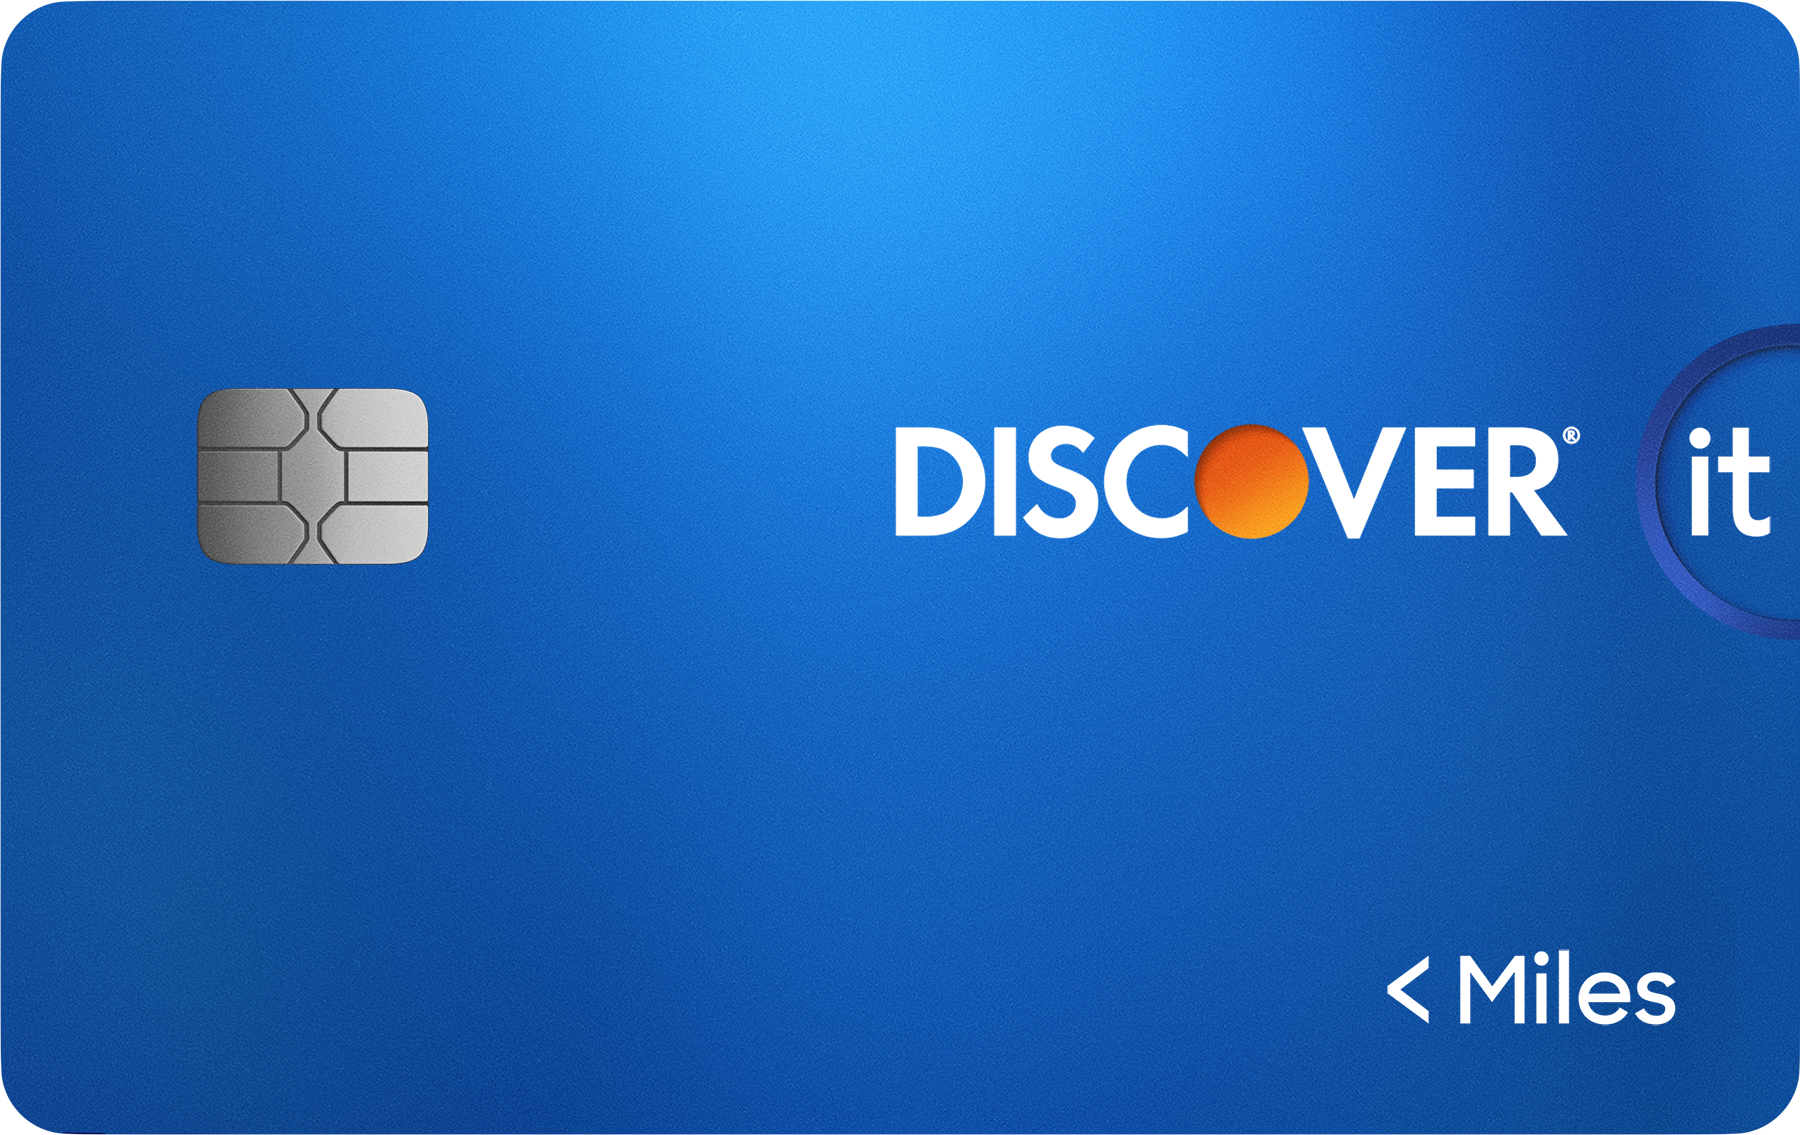 discover logo 2022